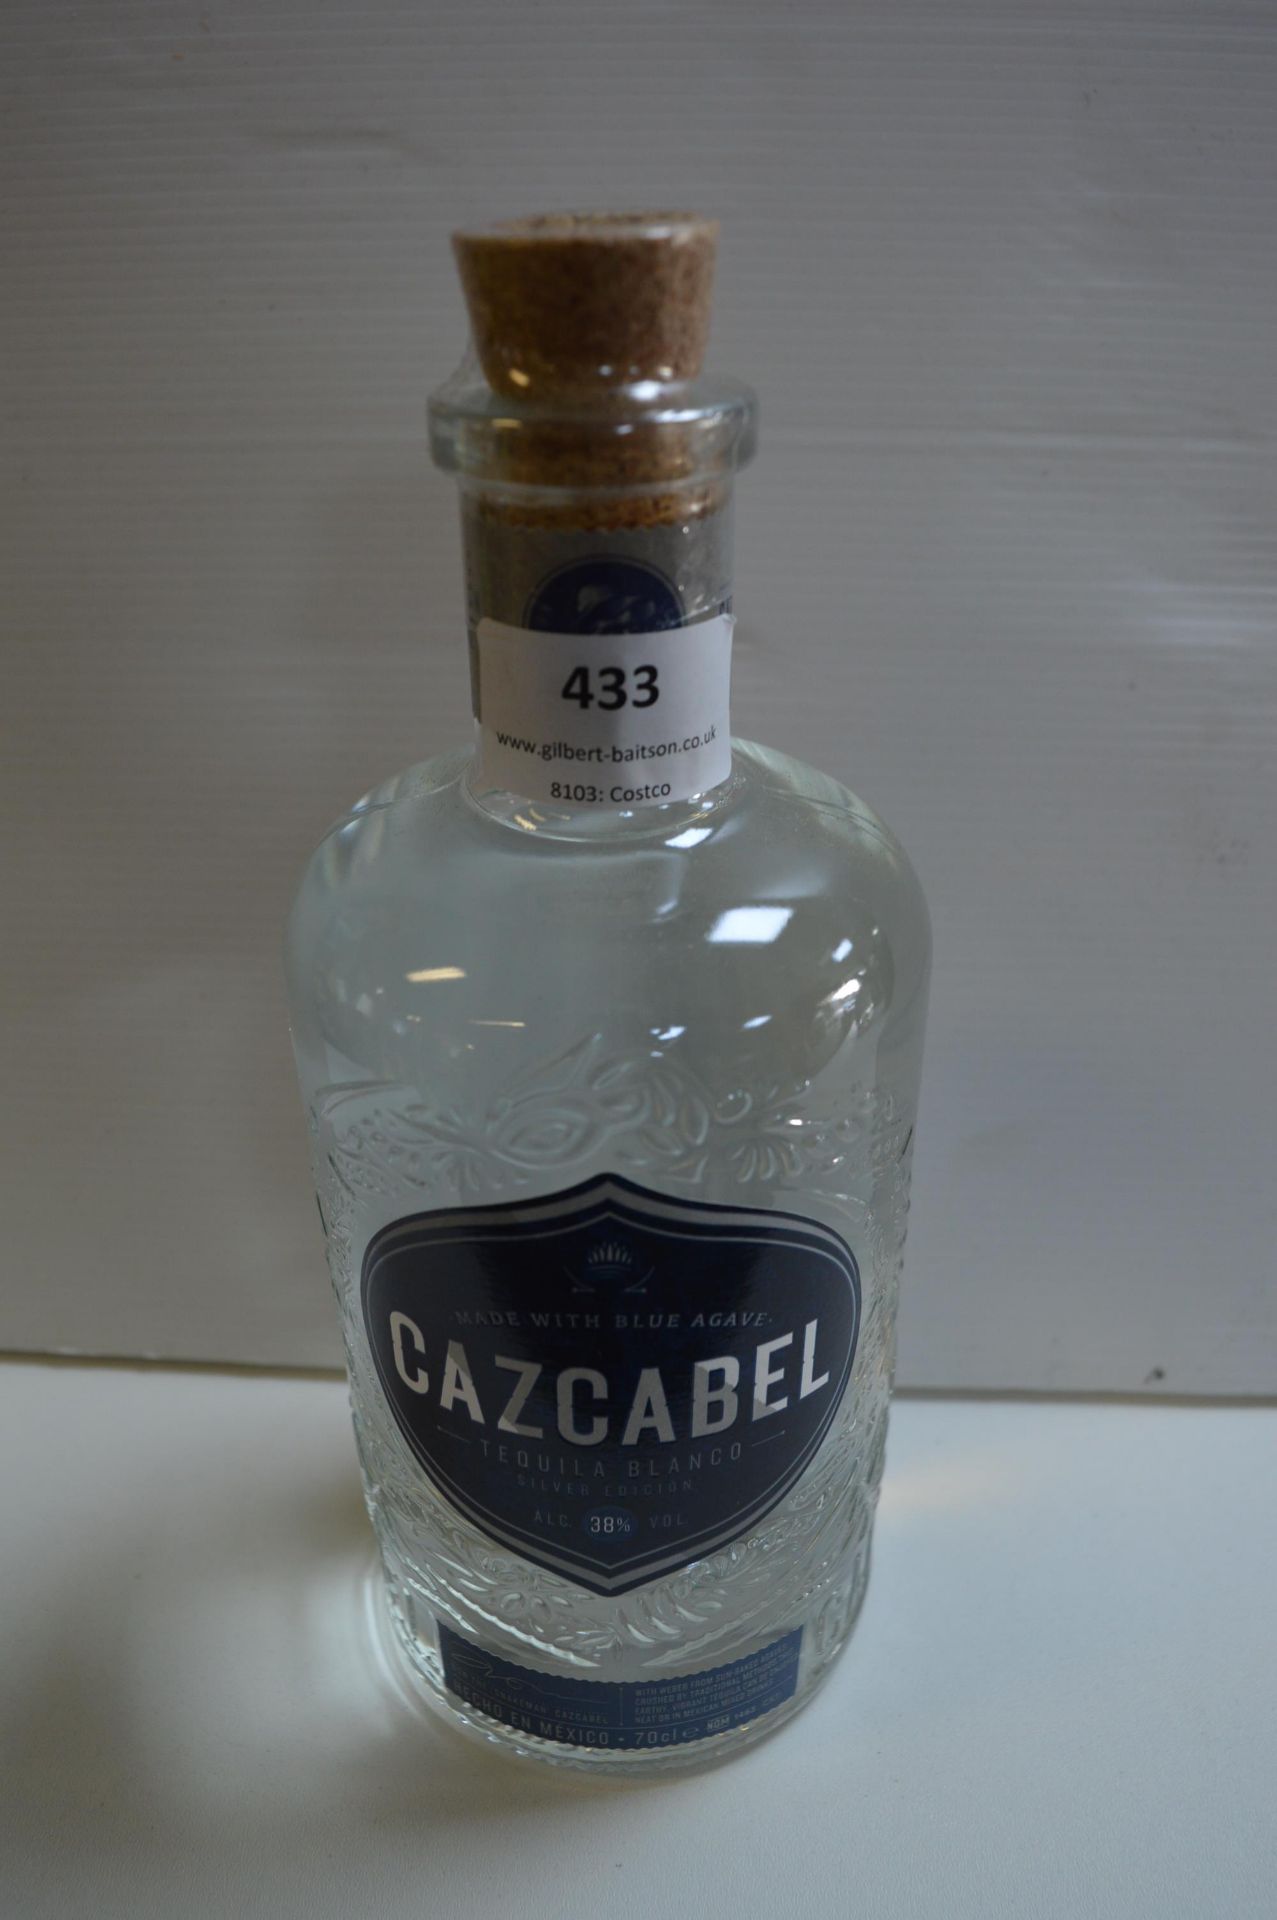 Bottle of Cazcabel Blue Agave Tequila